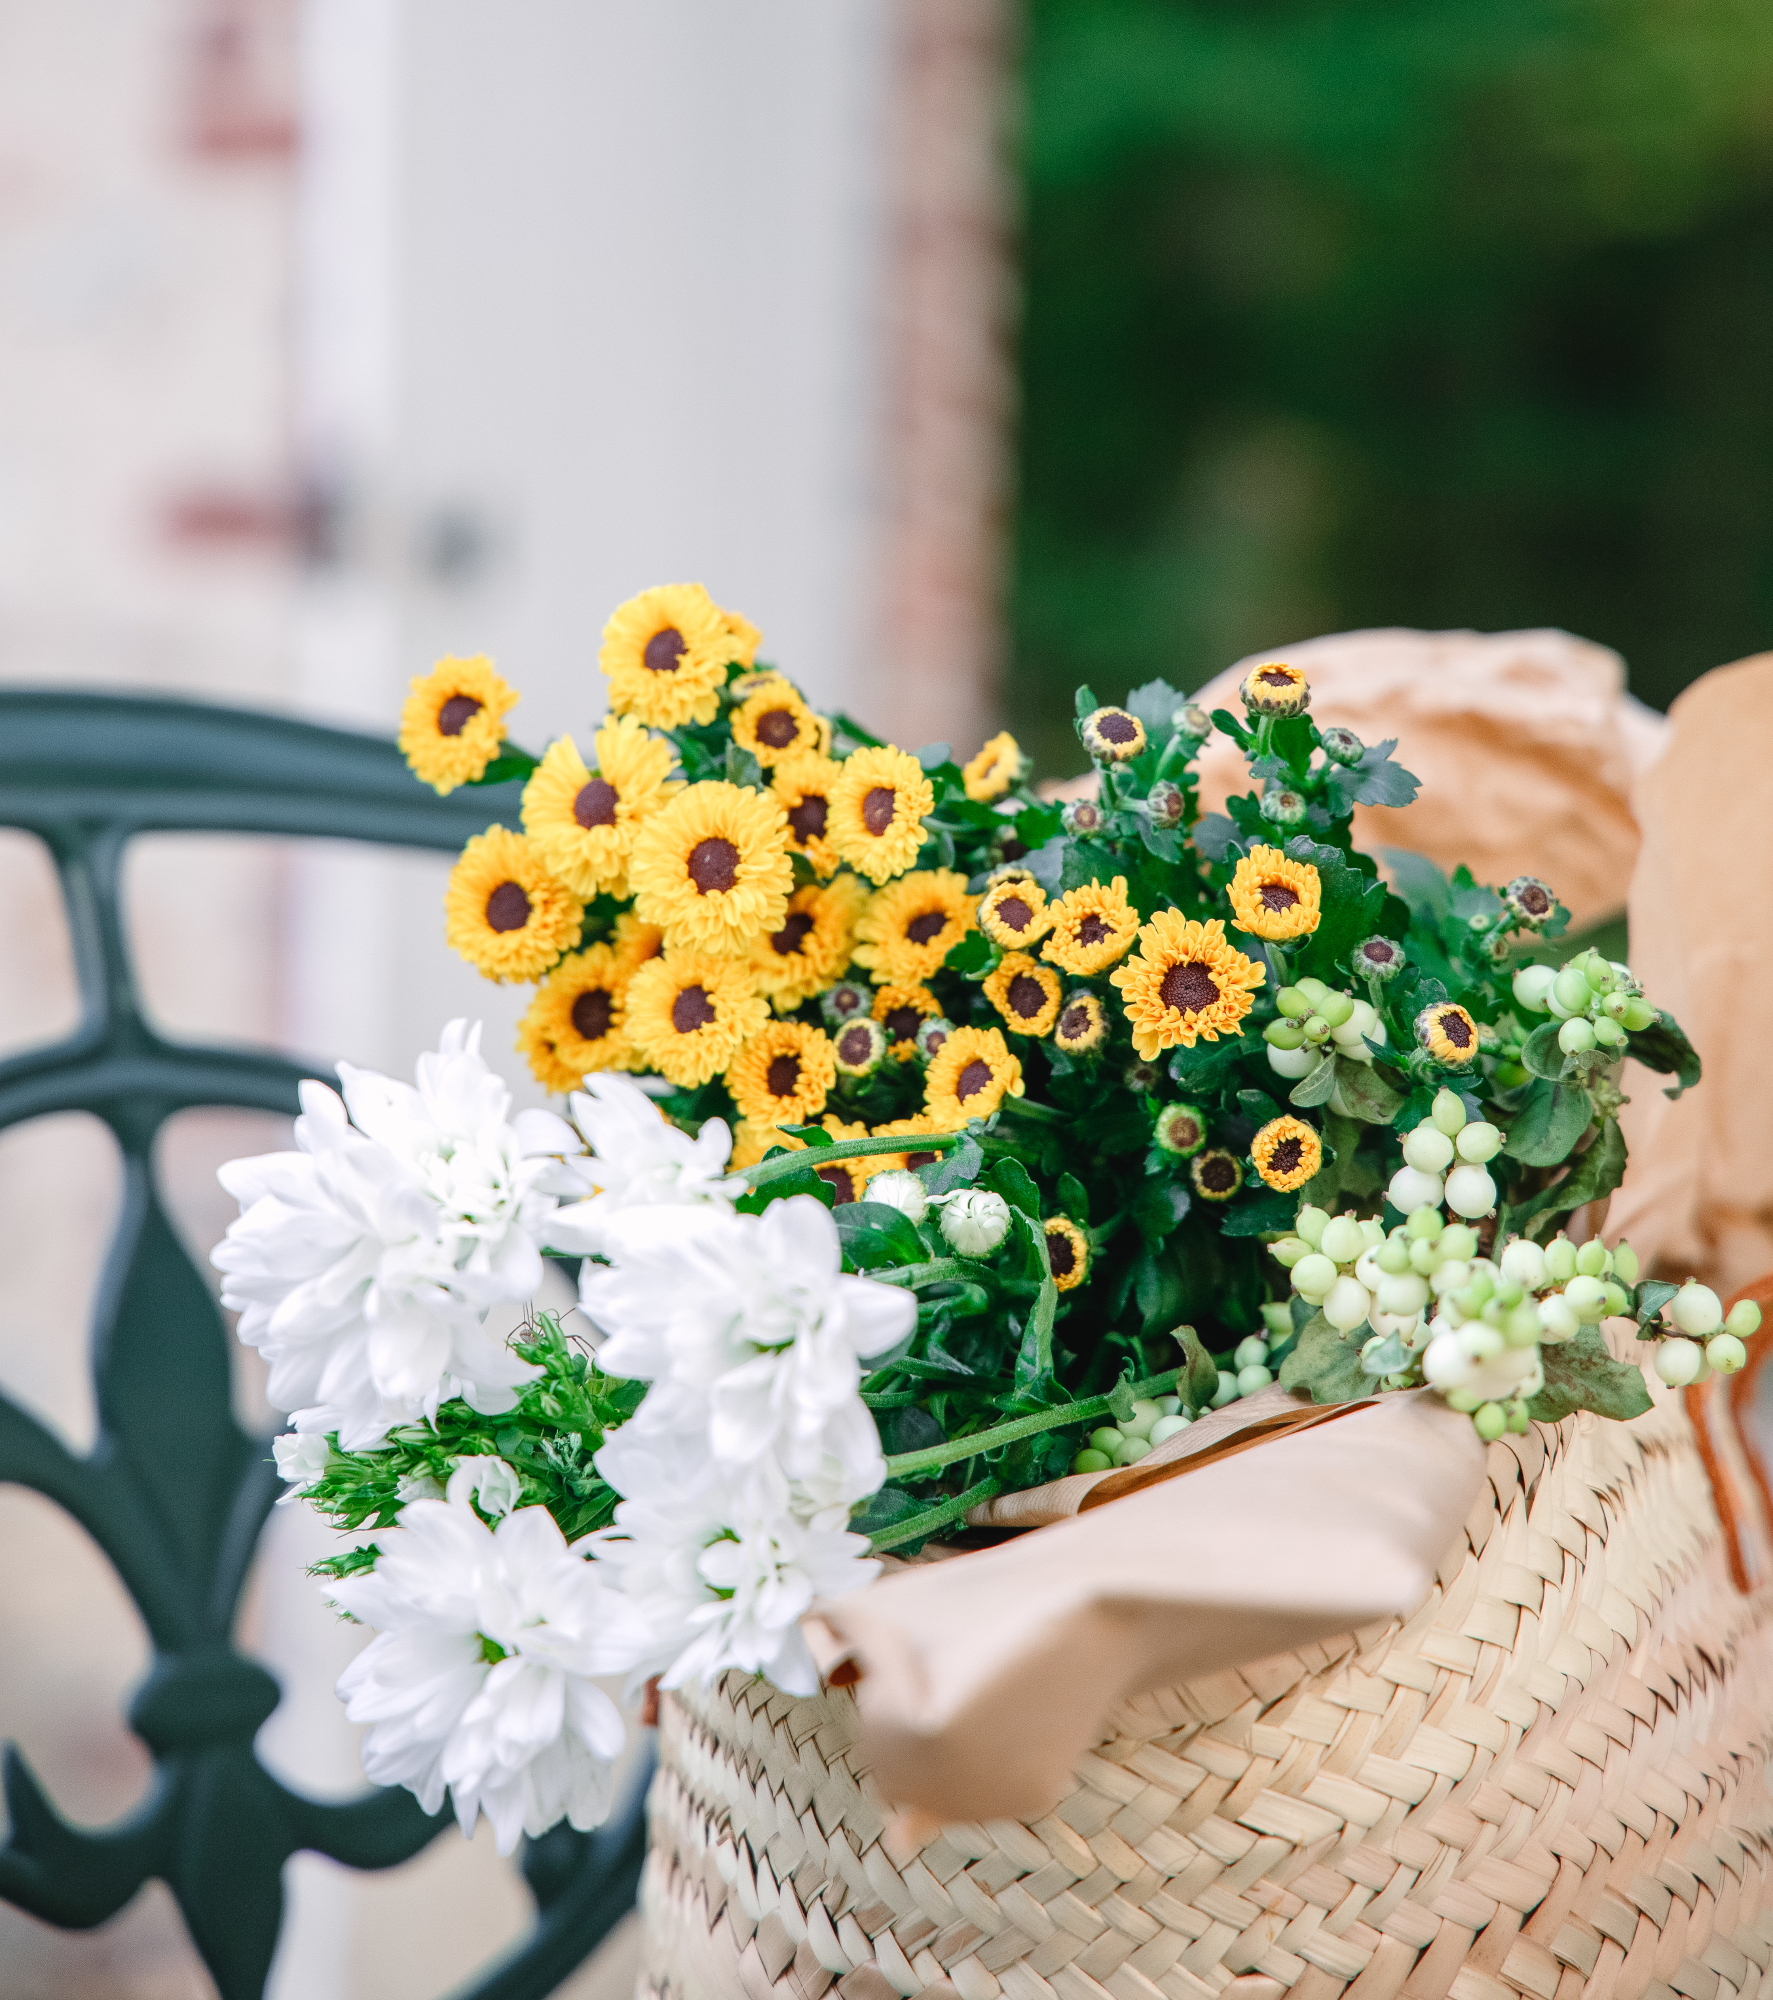 Bouquet de fleurs jaunes et blanches dans un panier en osier